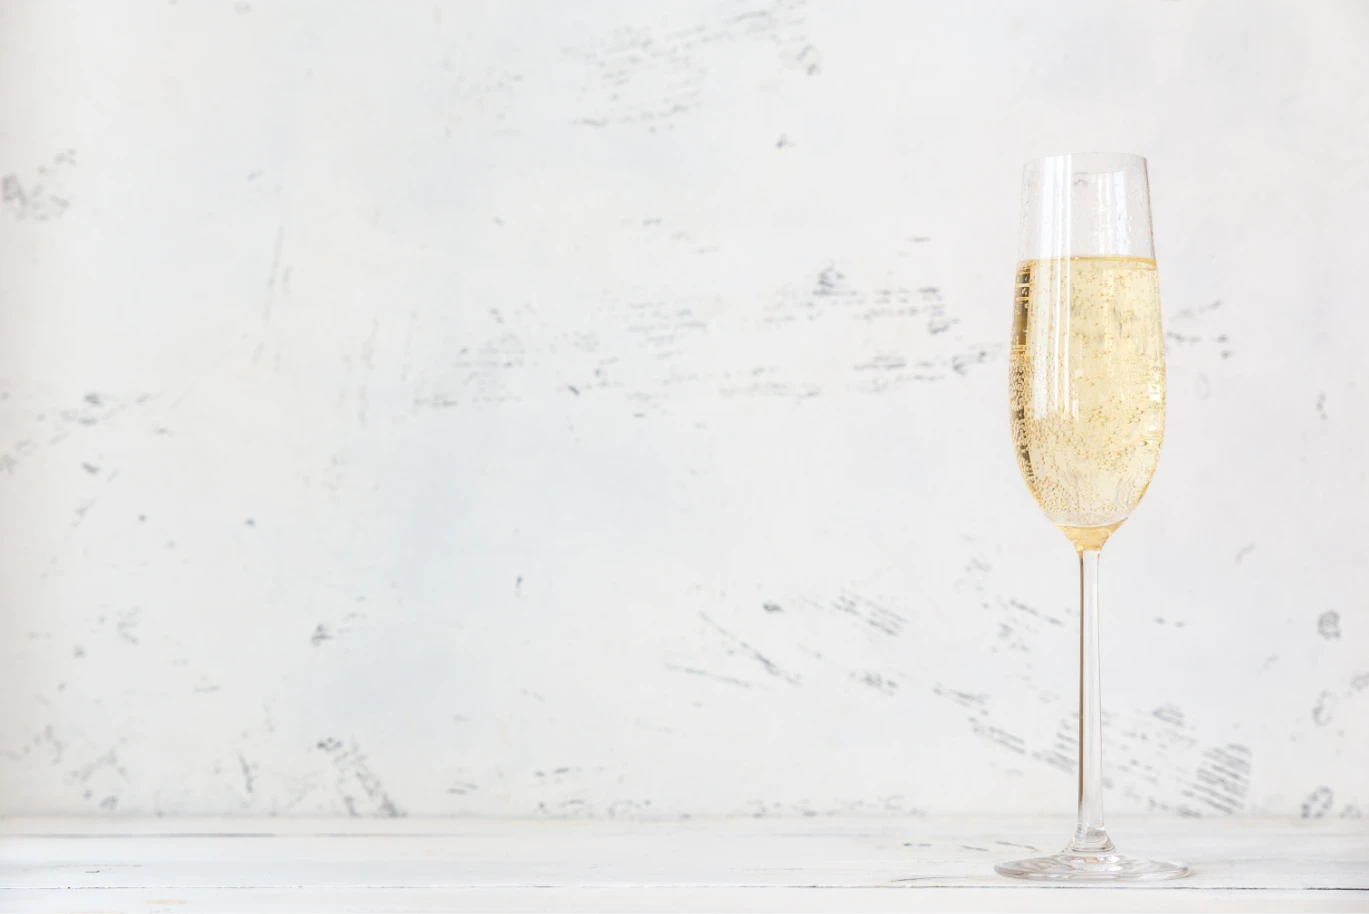 Månadens Vinhus: Champagne Bollinger